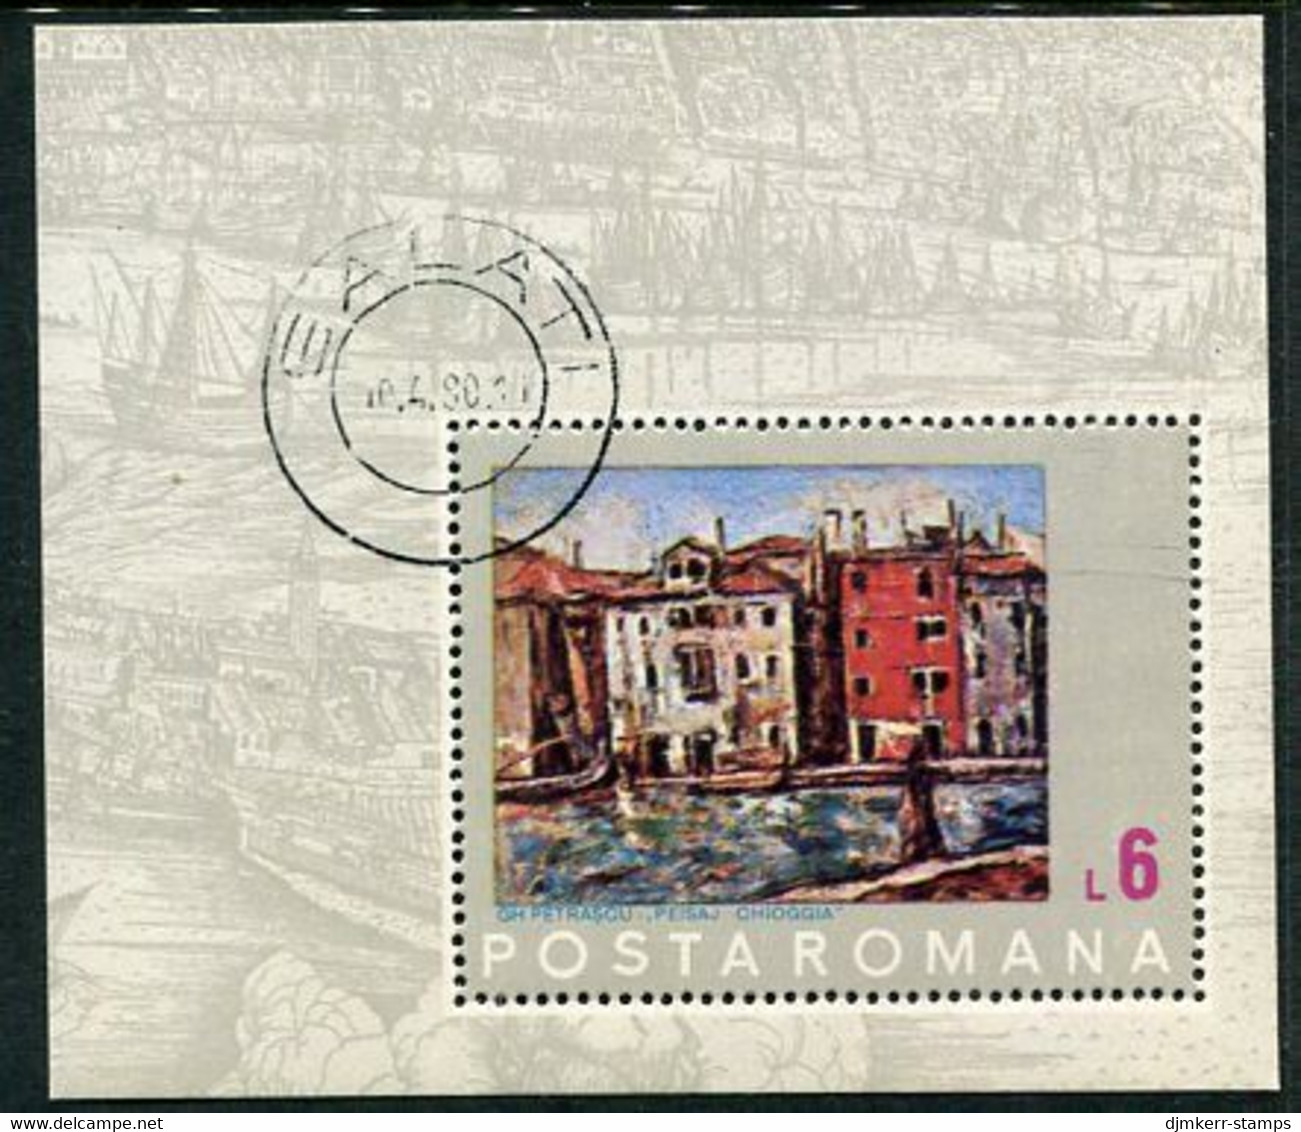 ROMANIA 1972 UNESCO Save Venice Block Used.  Michel Block 99 - Usati